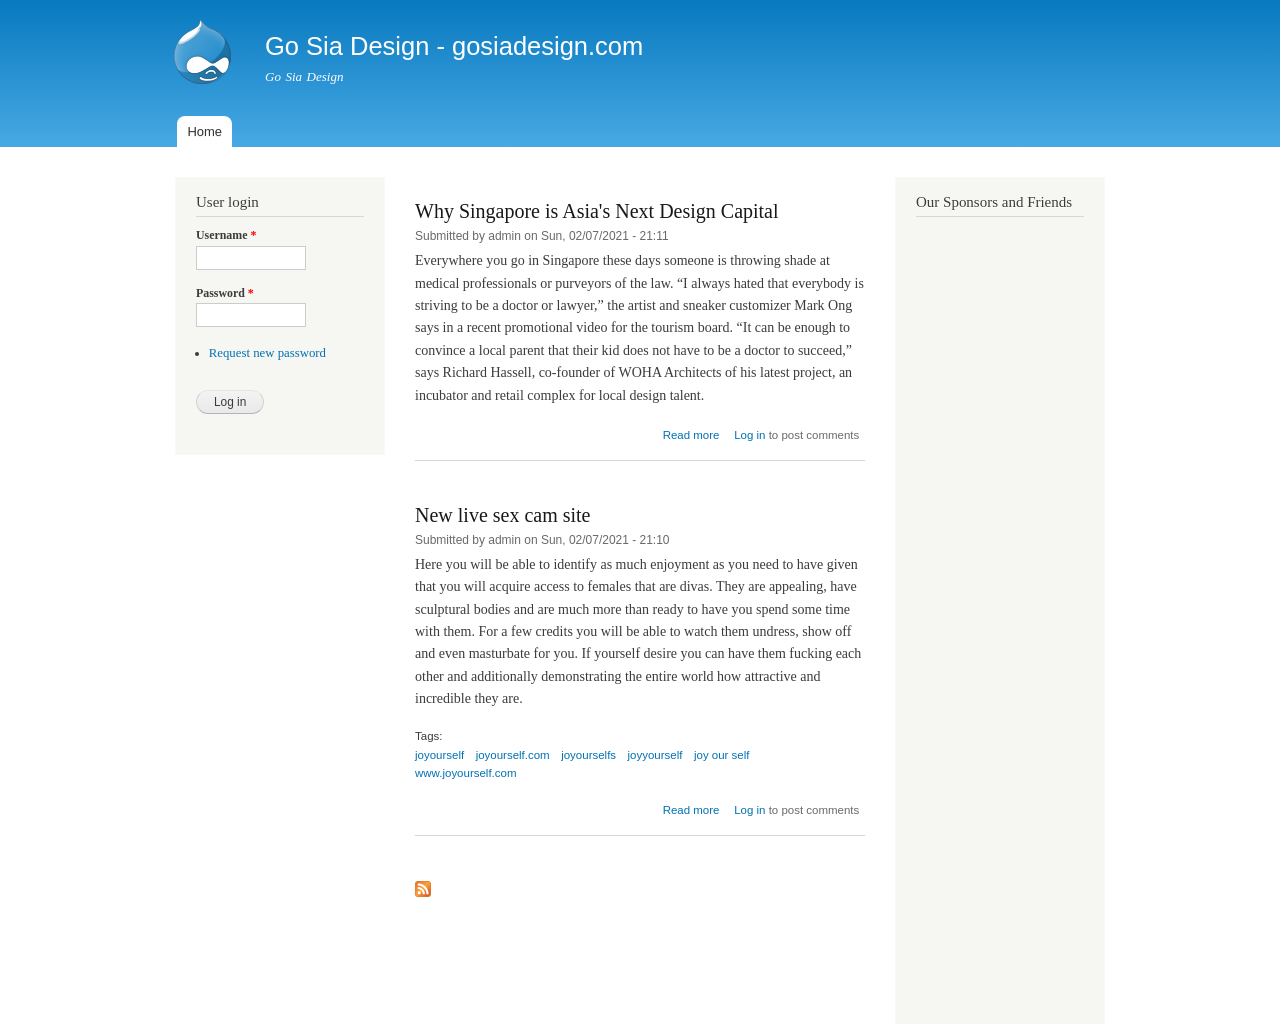 gosiadesign.com